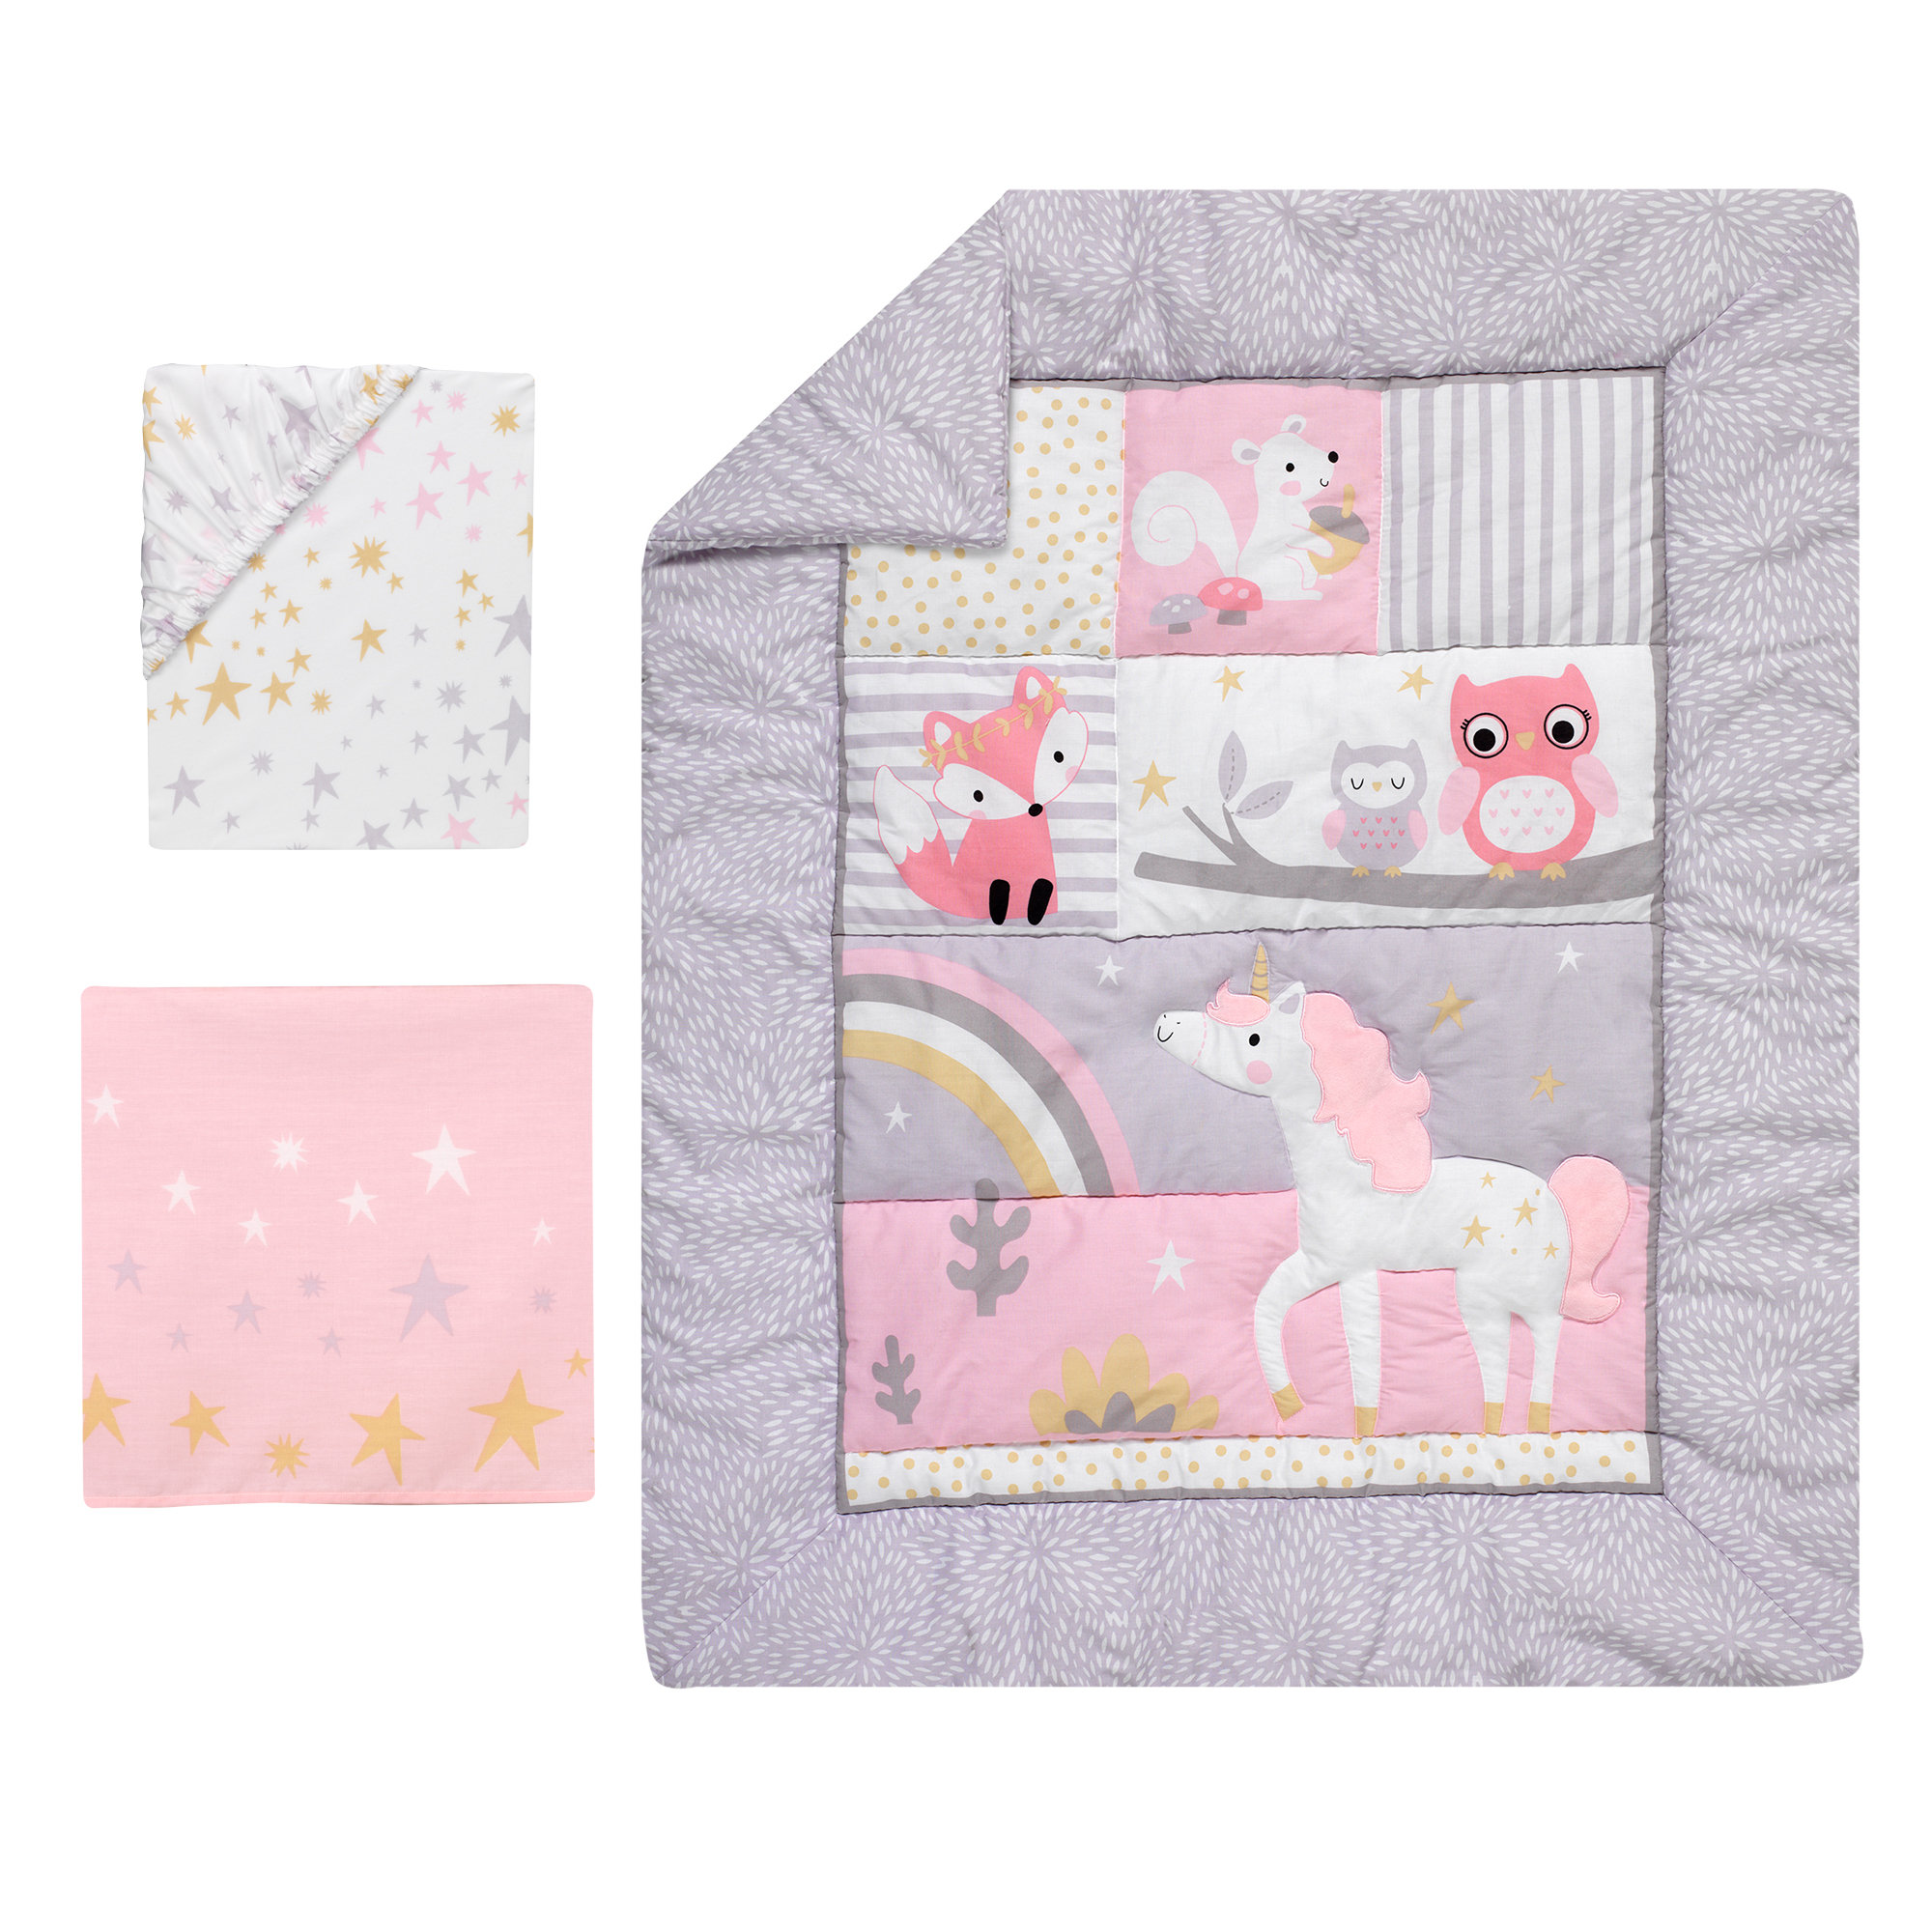 unicorn infant bedding